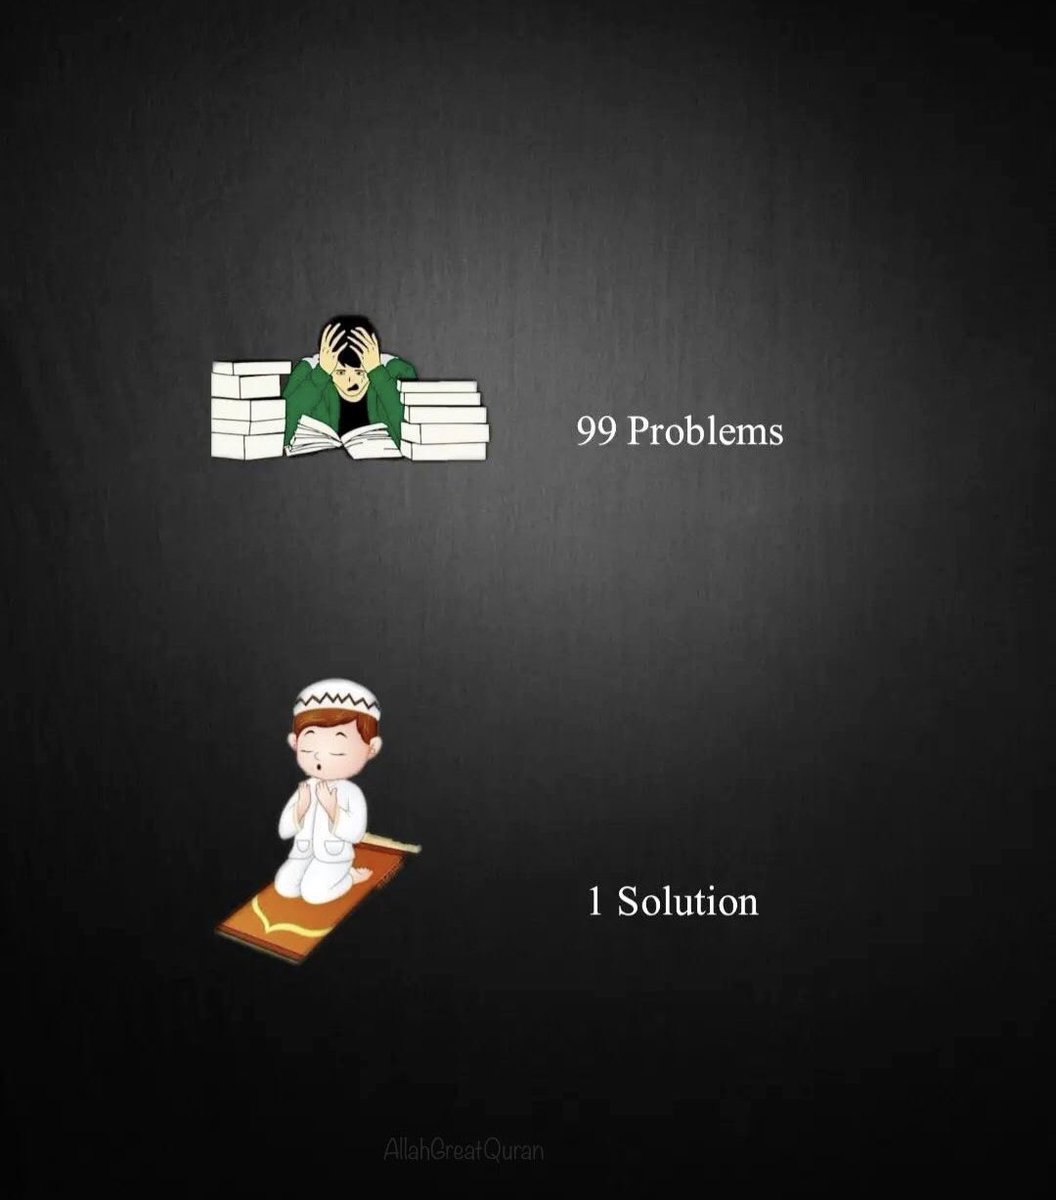 Fix your salah, Allah fixes your problems.